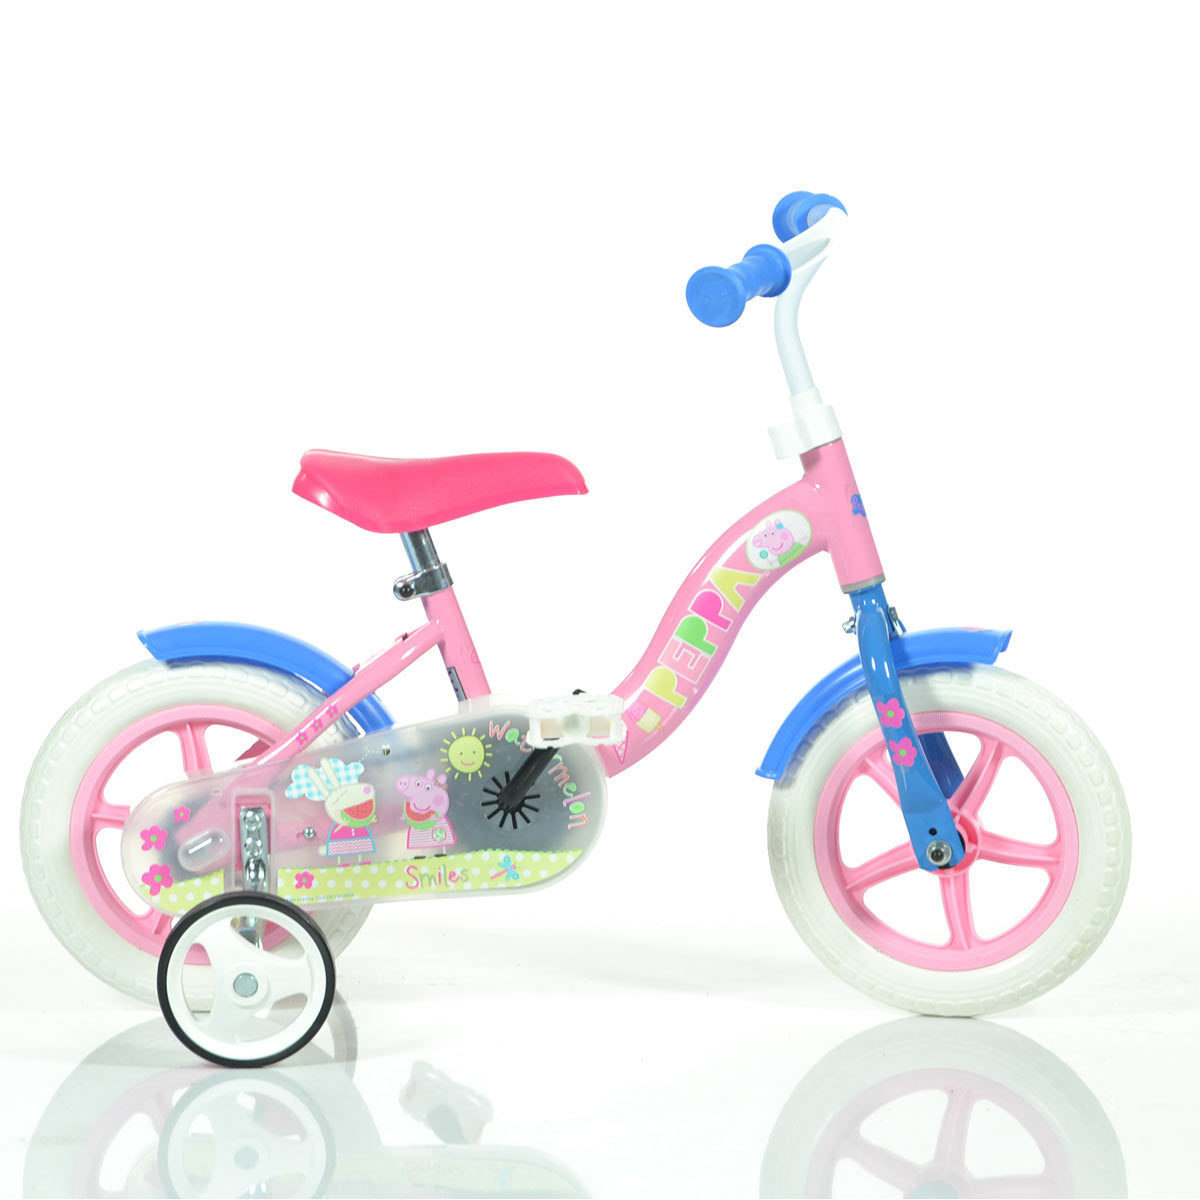 costco childrens bikes